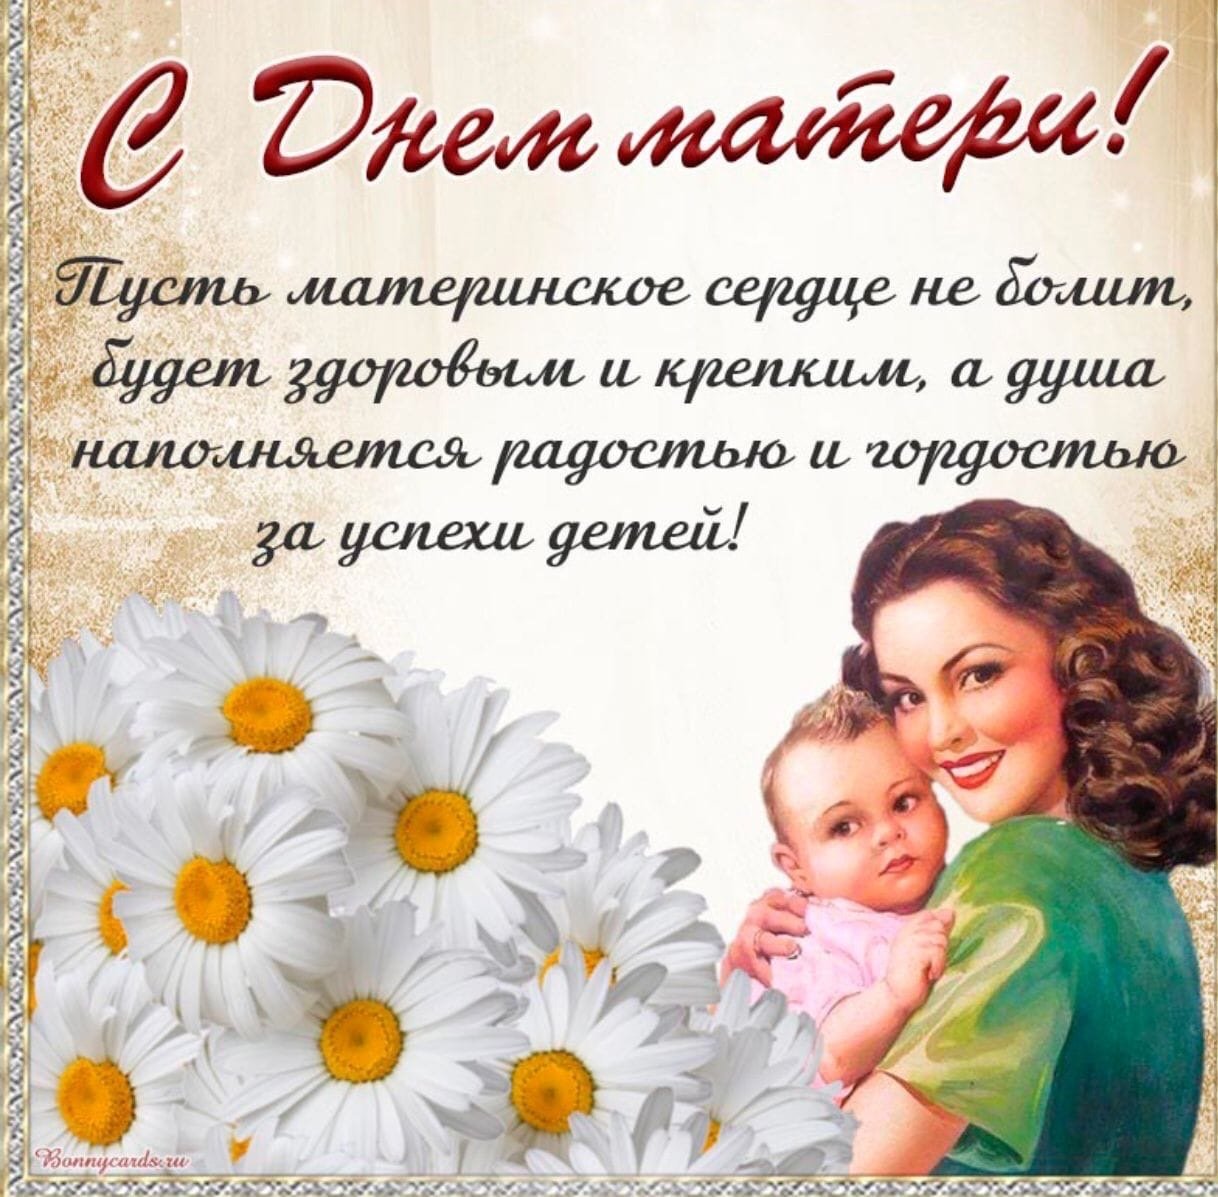 С Днем матери! Красивые поздравления в великий праздник мам и мамочек в Казахстане 18 сентября